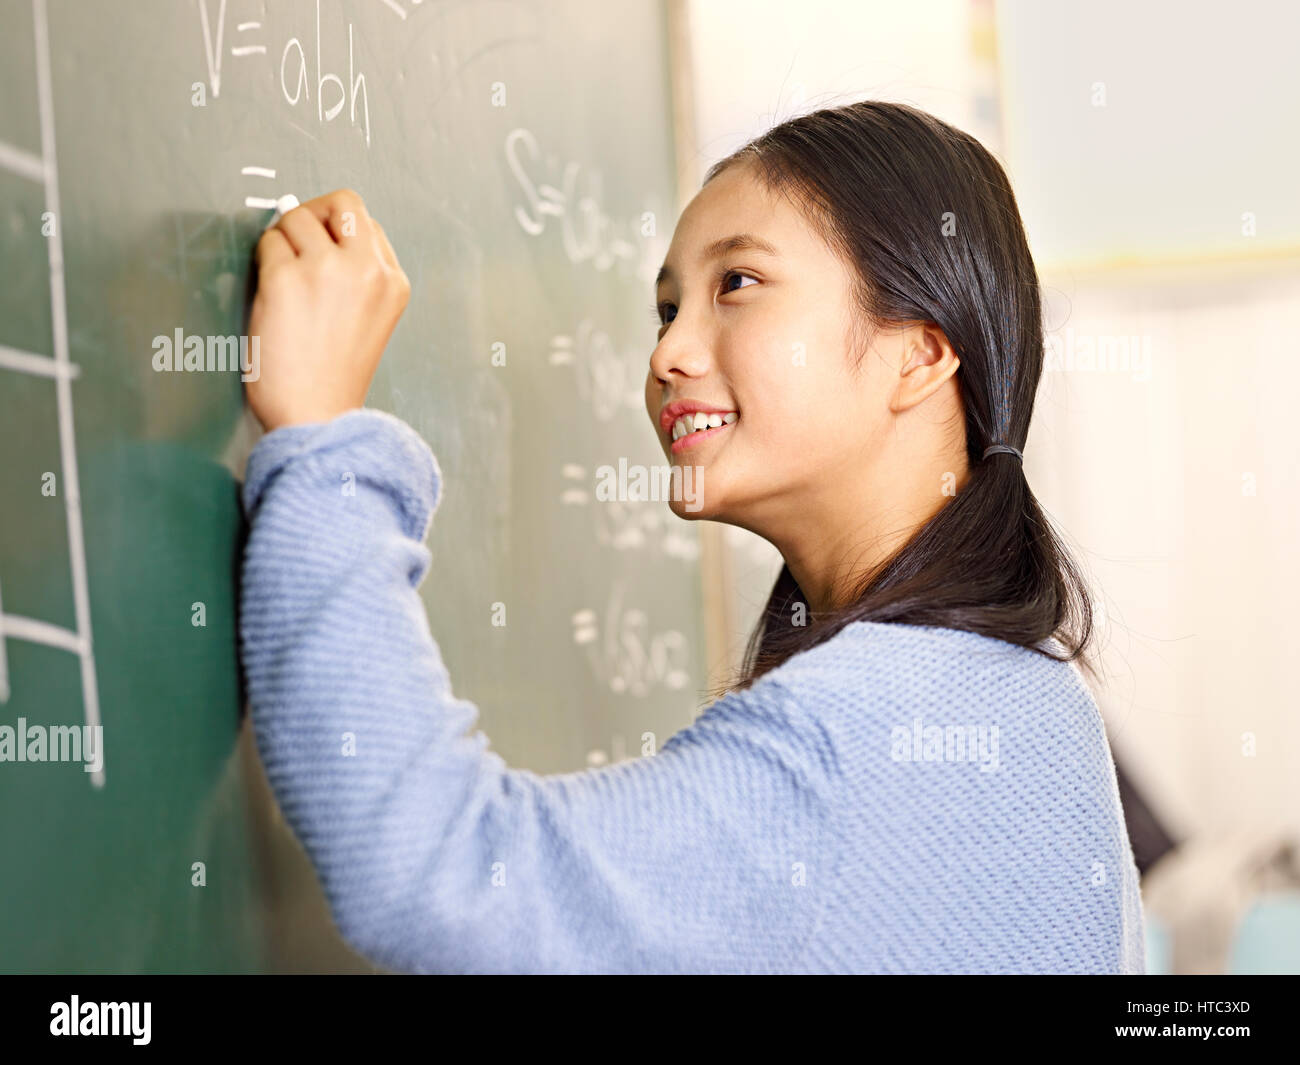 Fiducioso asiatici scuola elementare studente che scrive la risposta a un problema di geometria sulla lavagna. Foto Stock